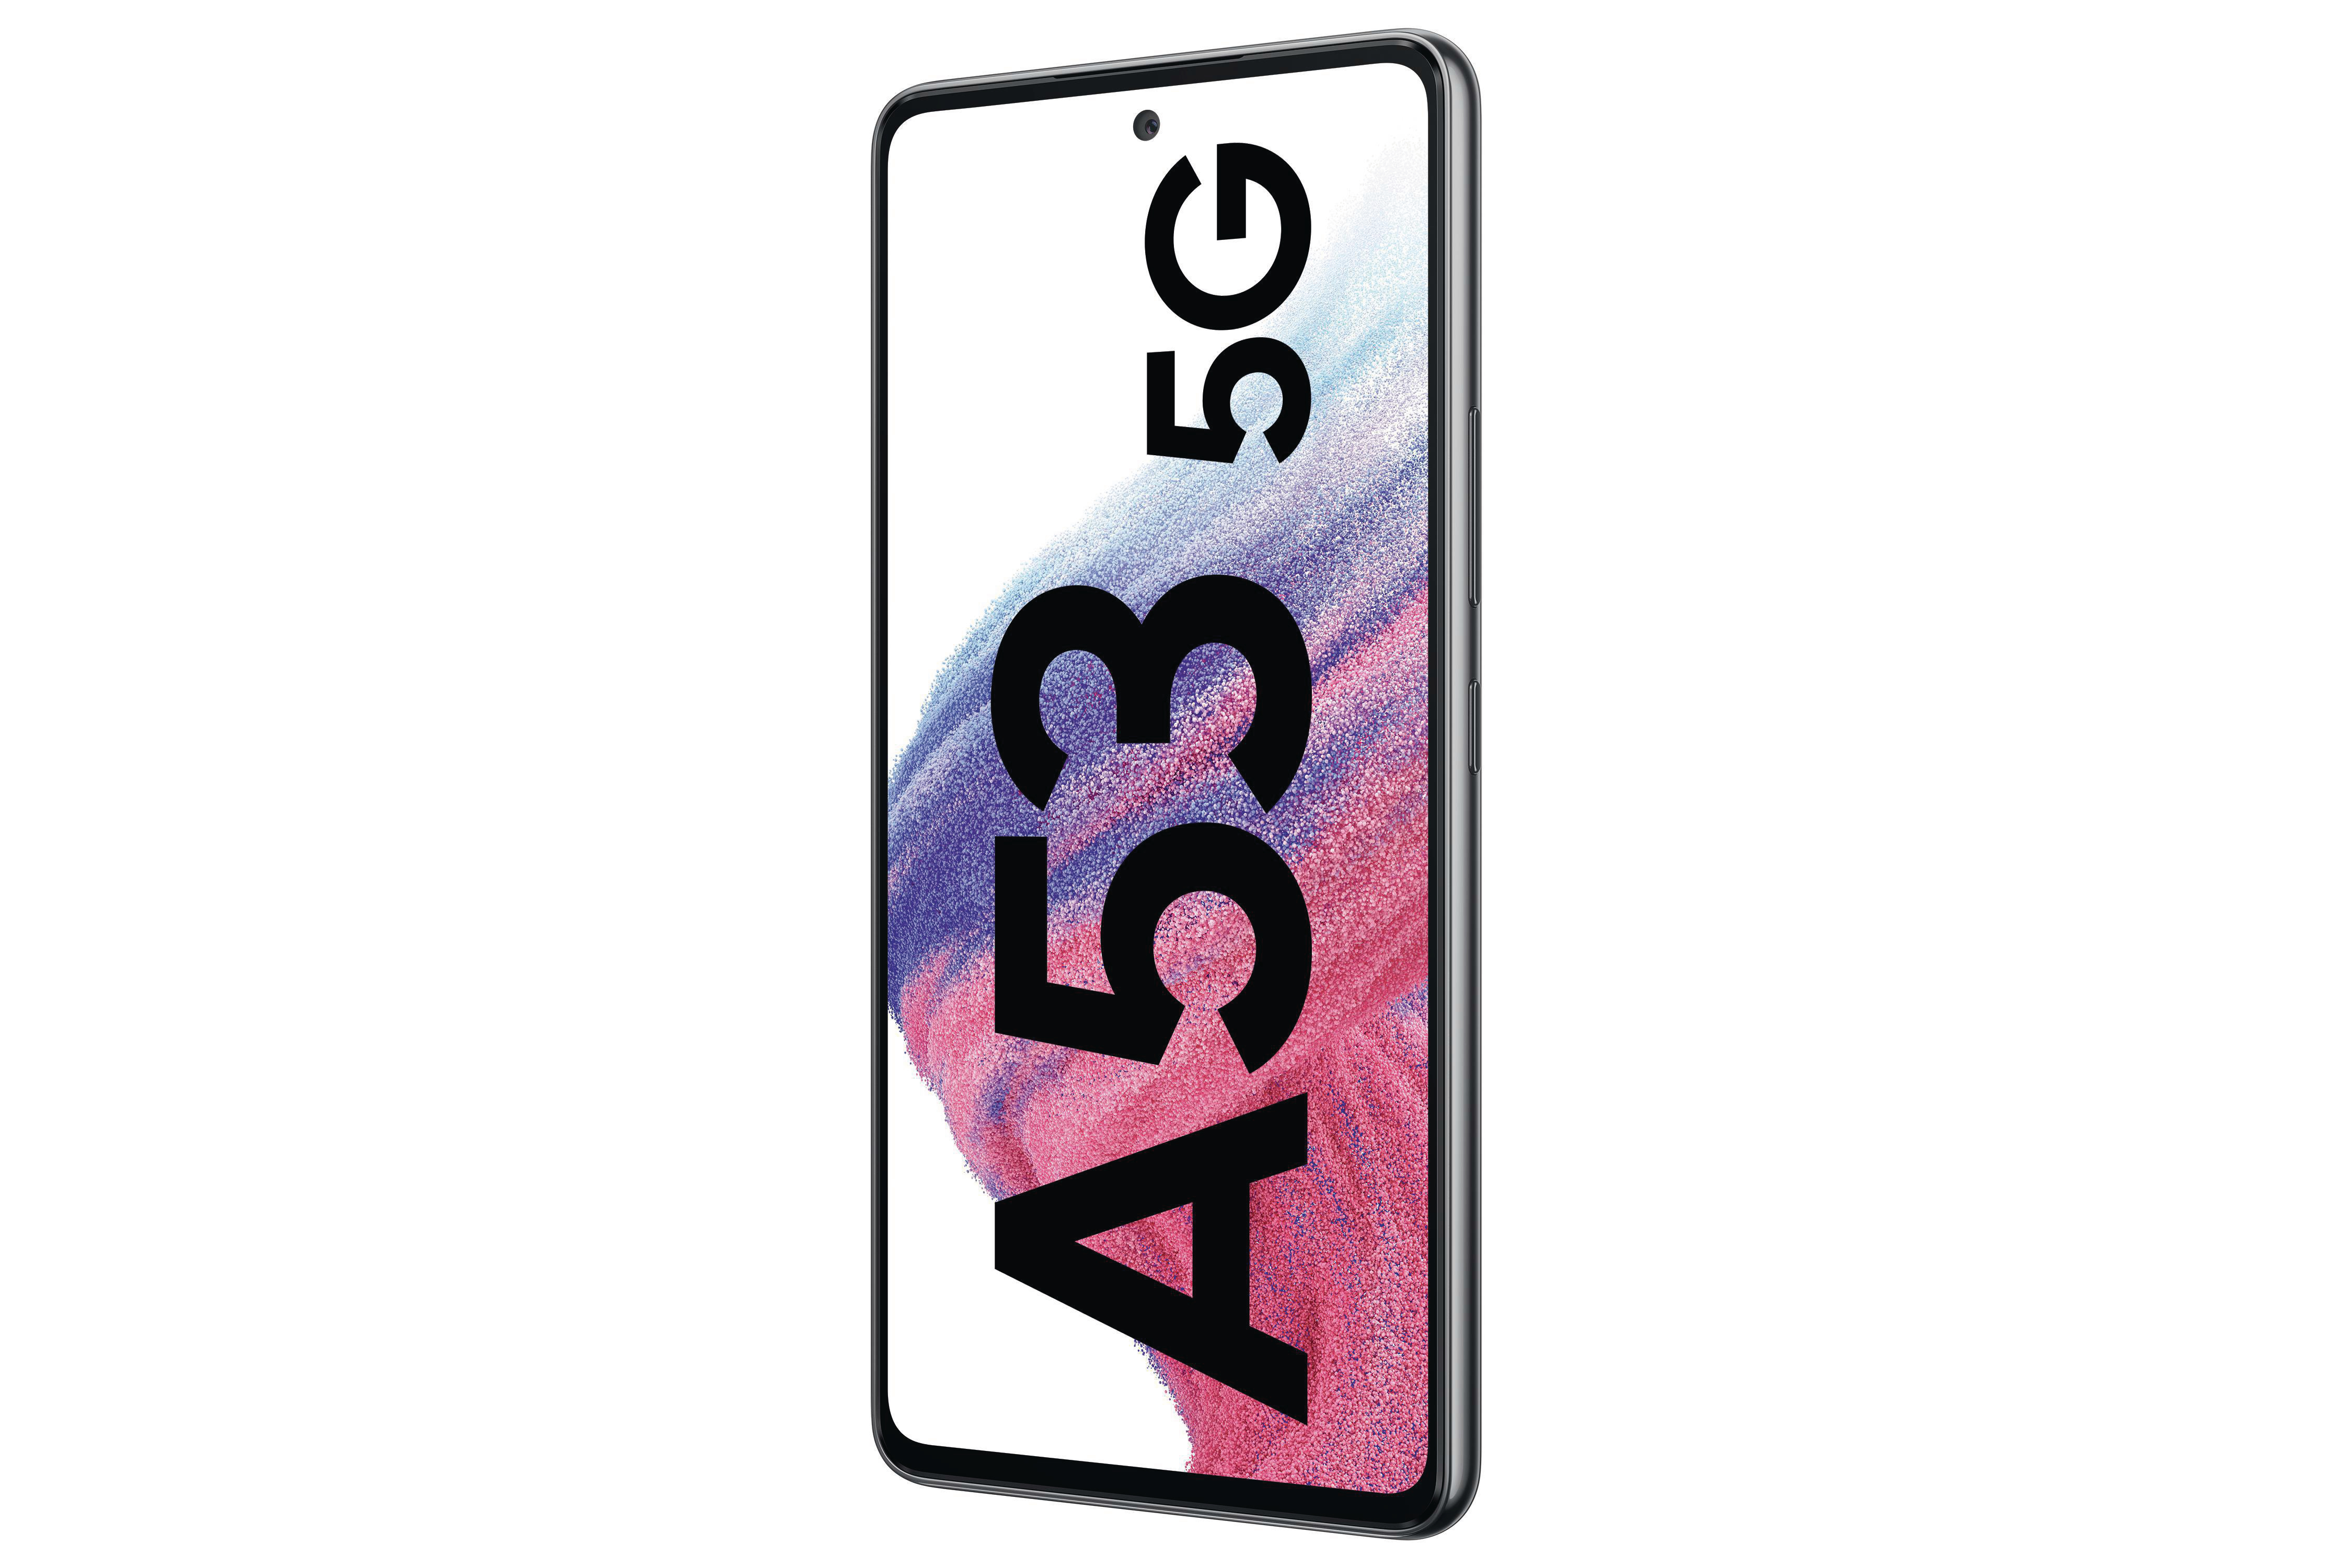 SAMSUNG Galaxy GB SIM 256 5G Awesome Dual A53 Black